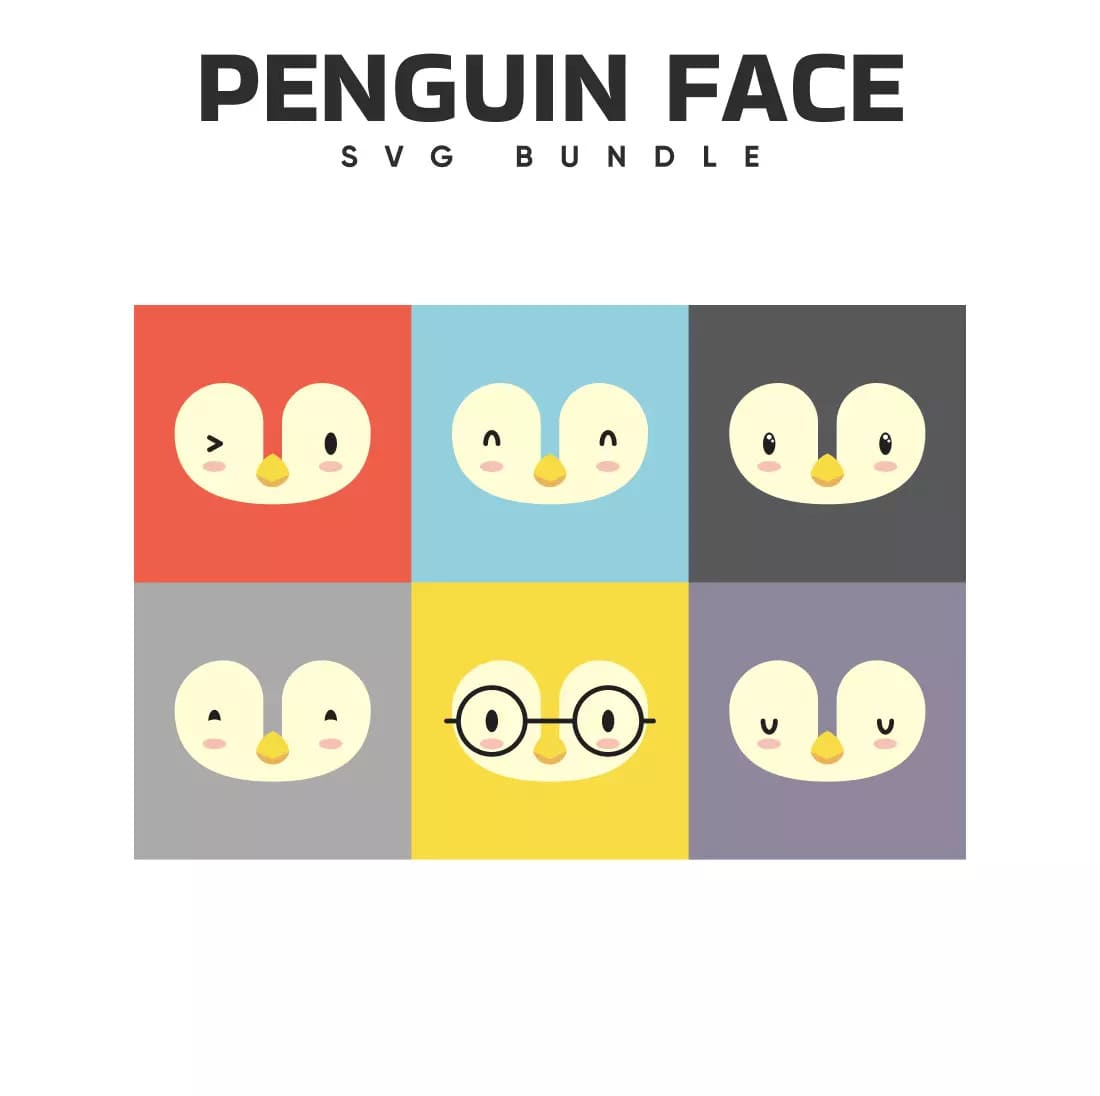 The penguin face svg bundle.